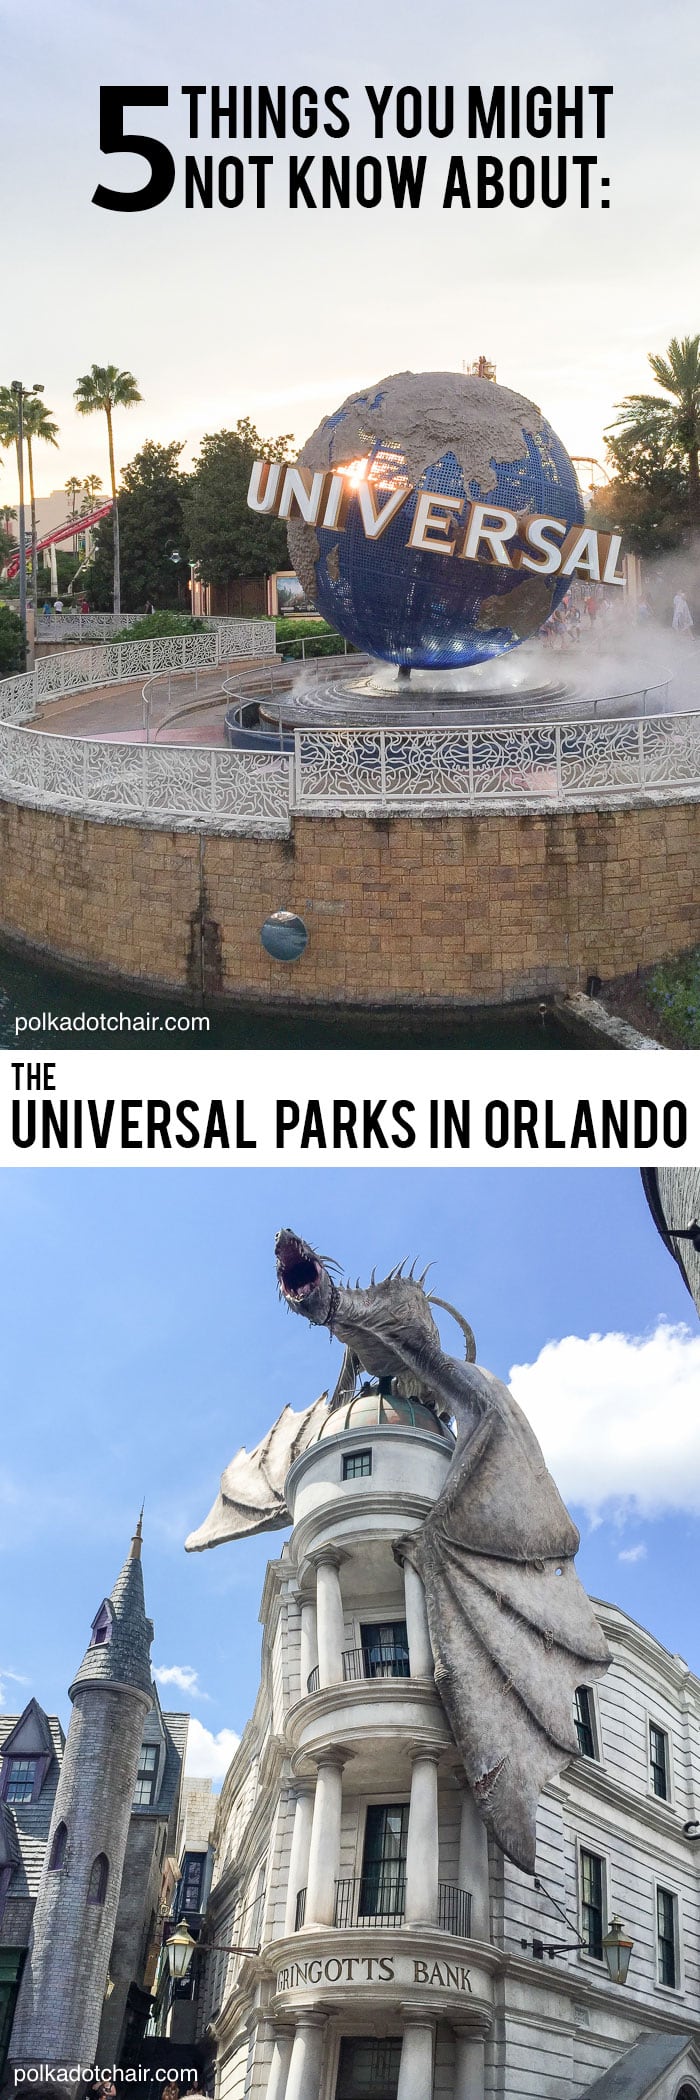 5 faits fantastiquement amusants que vous ne connaissez peut-être pas sur les parcs universels de Floride !